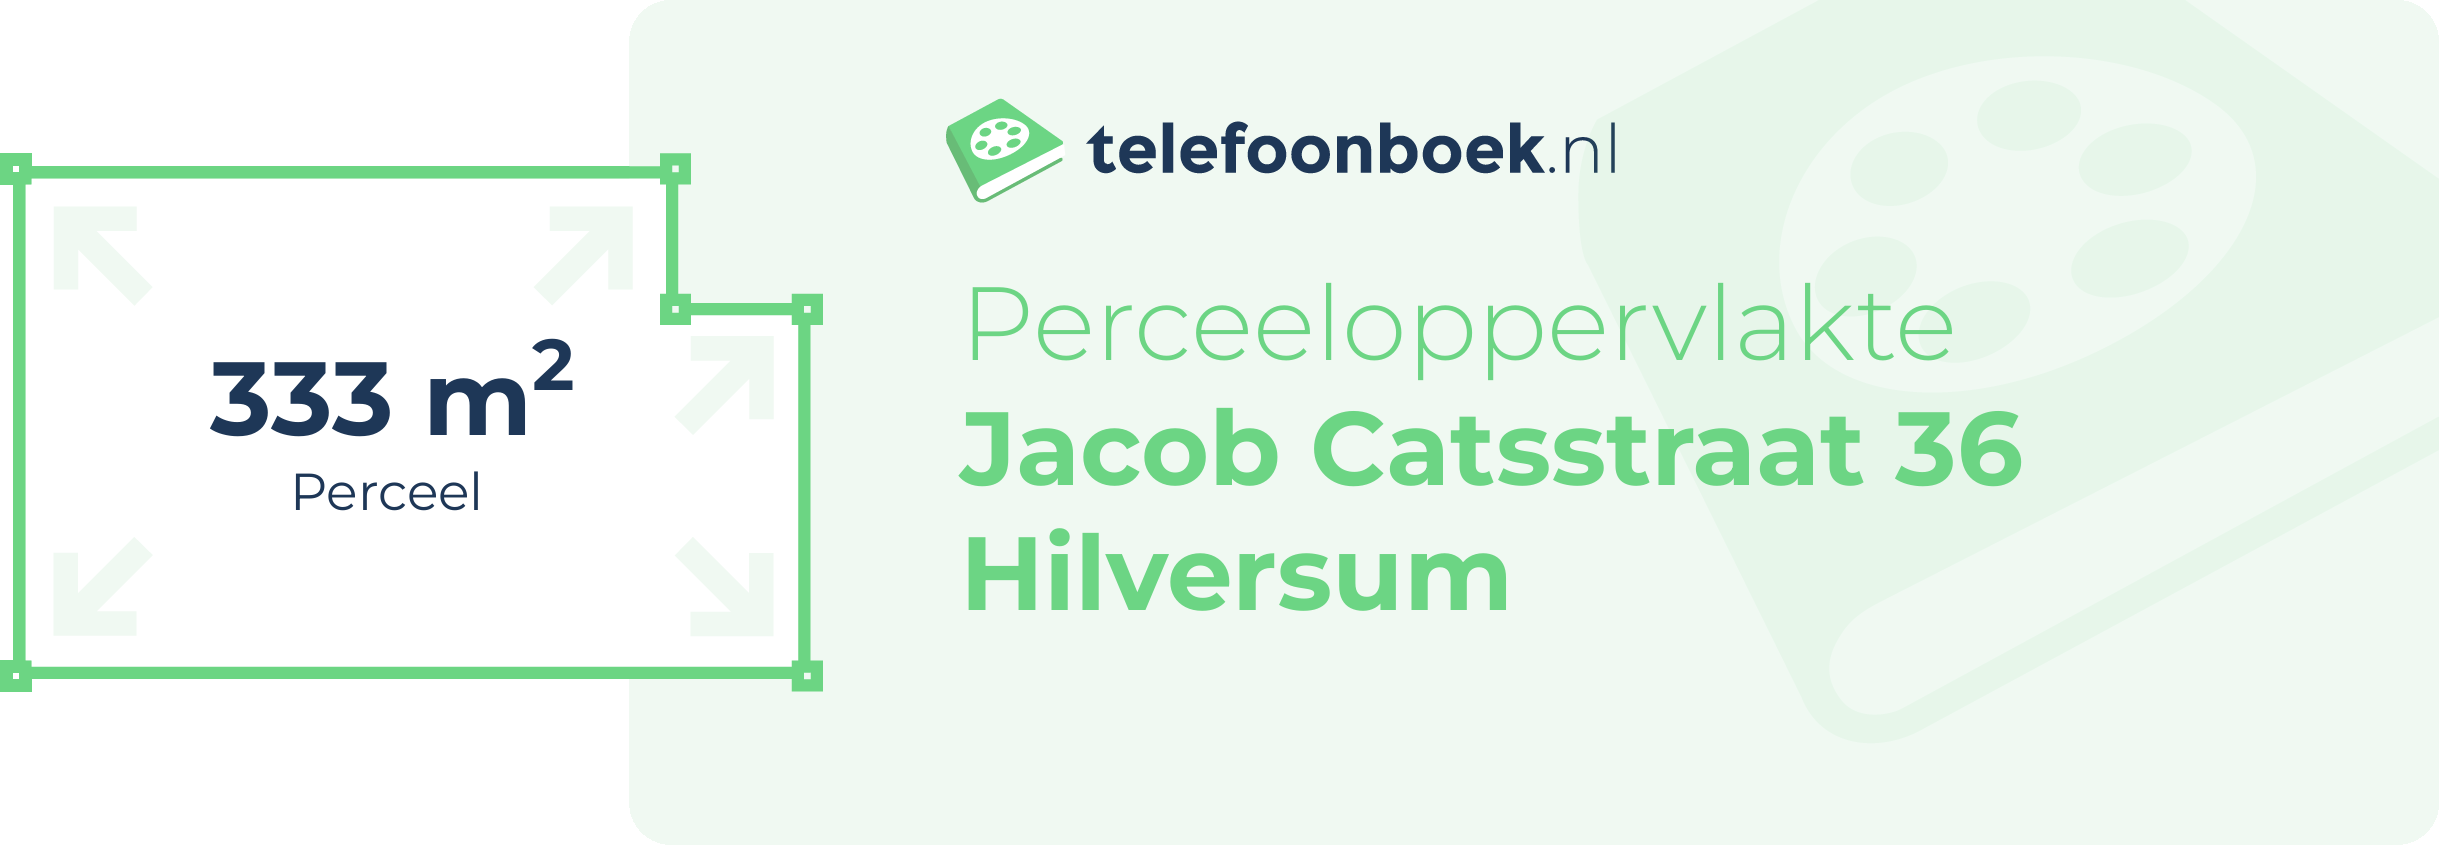 Perceeloppervlakte Jacob Catsstraat 36 Hilversum